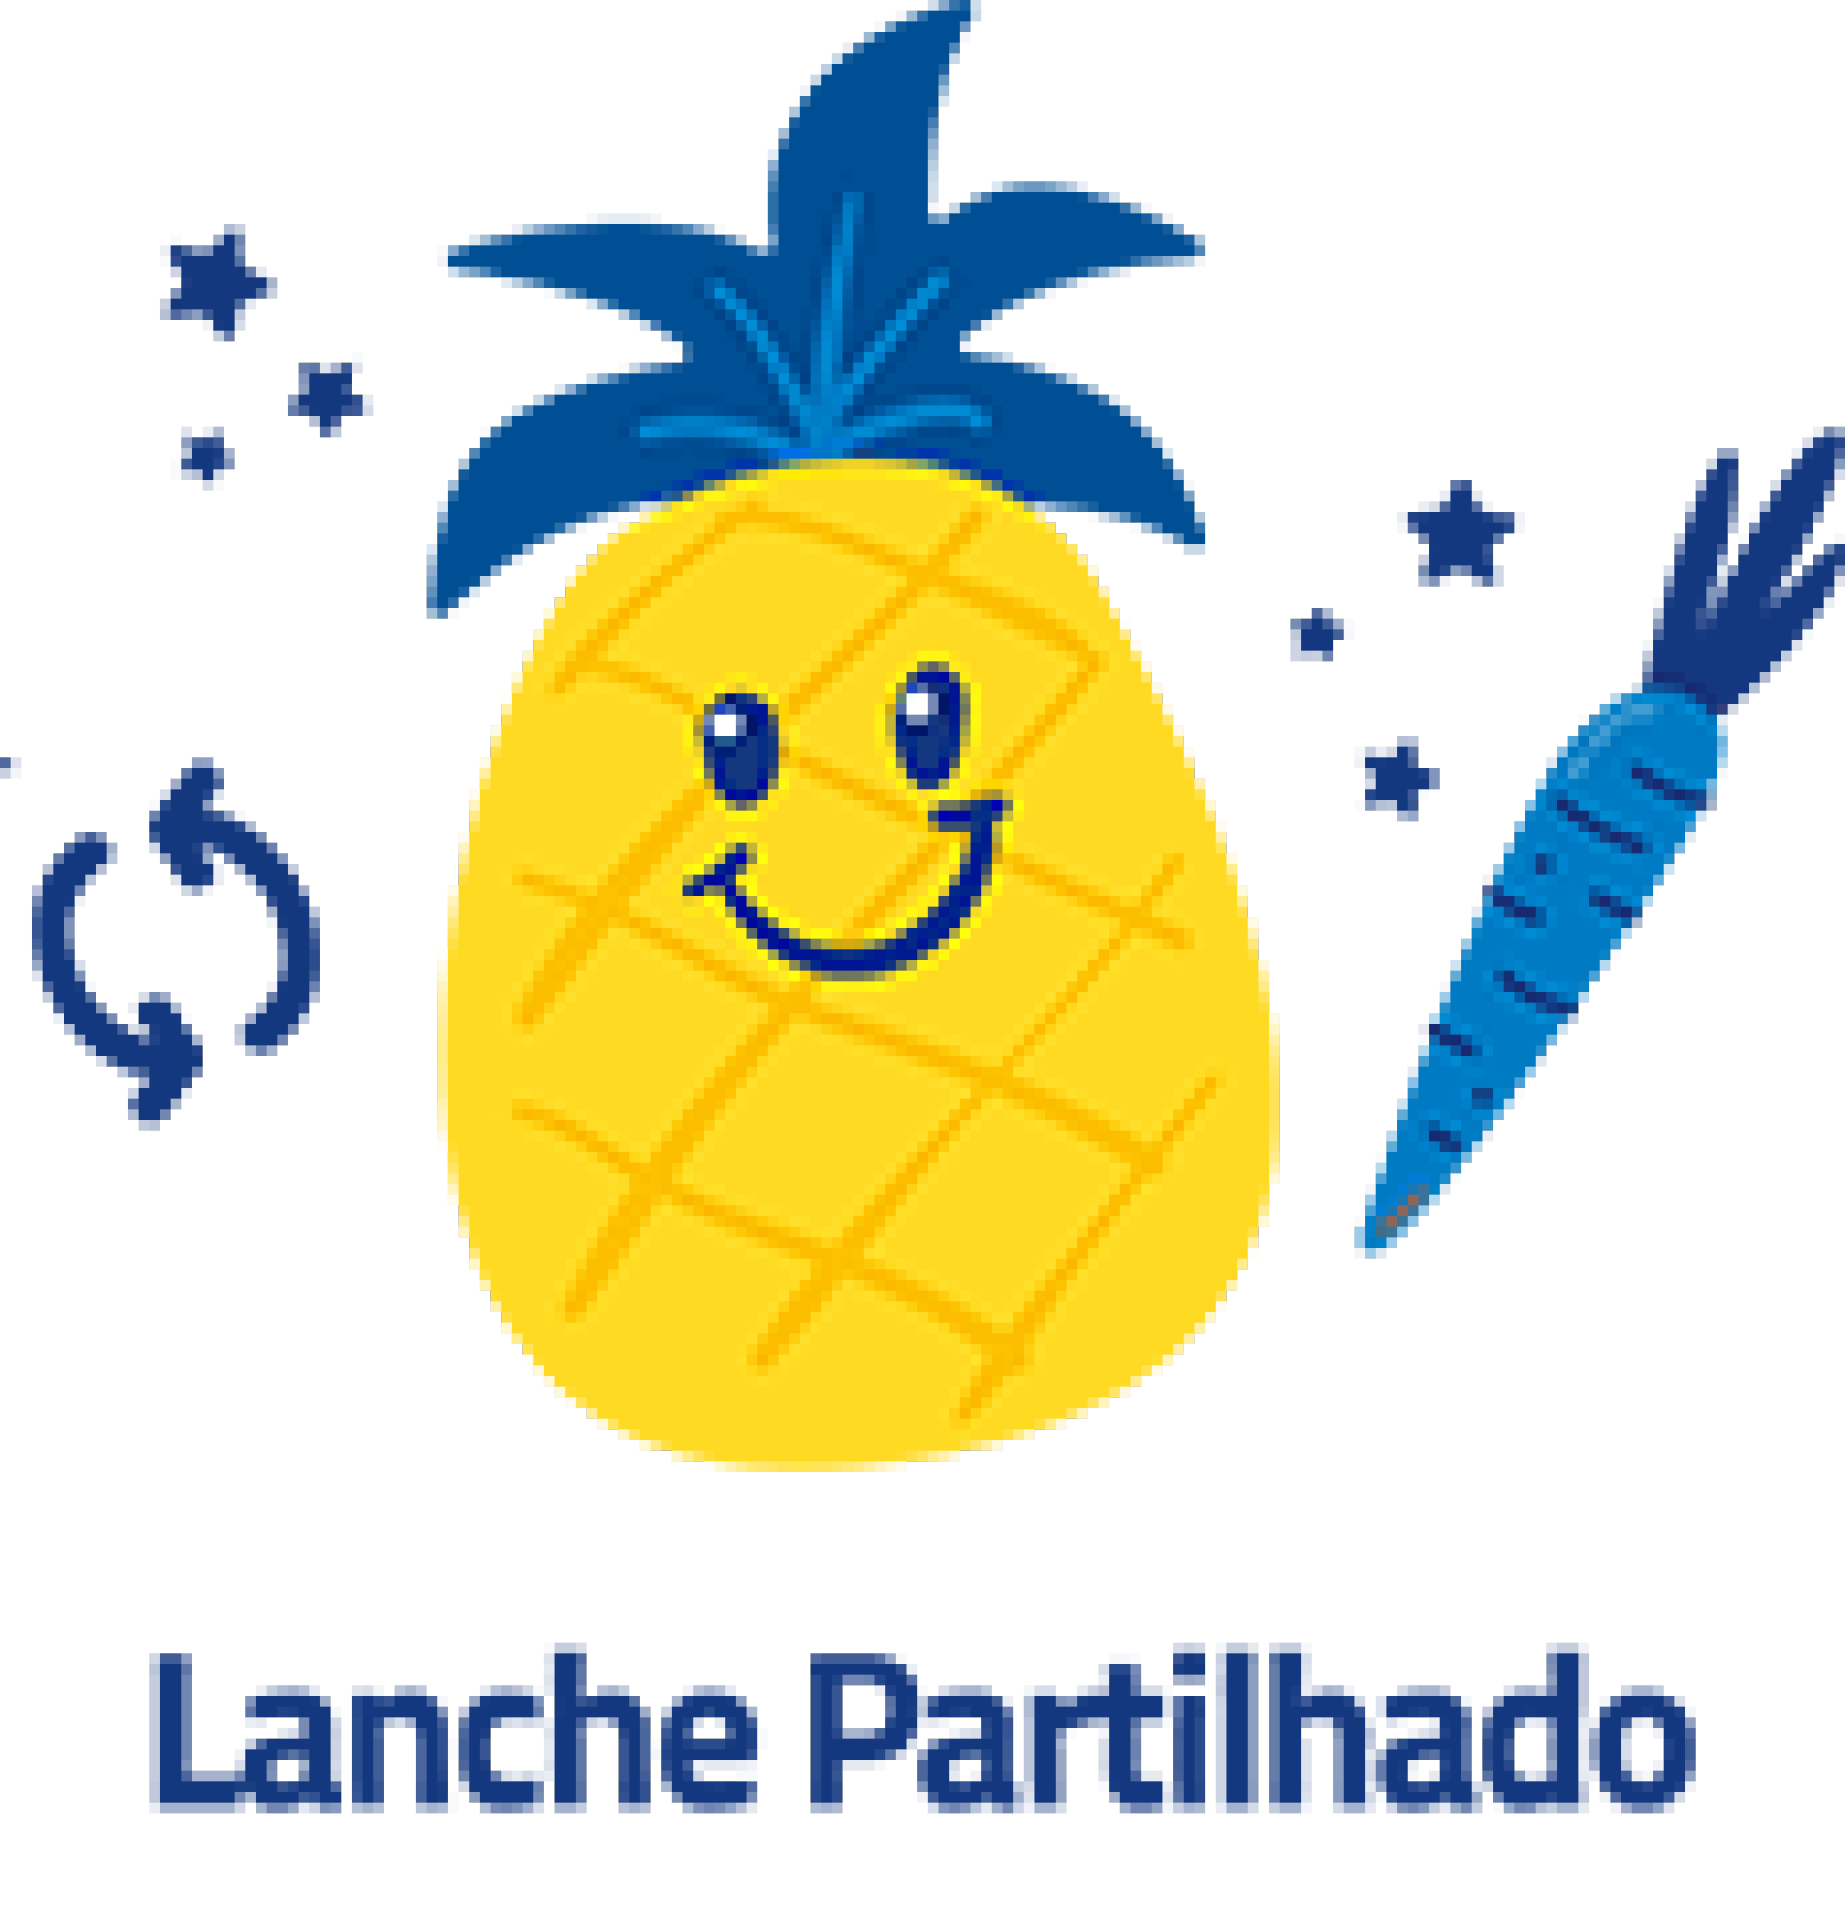 LANCHE PARTILHADO